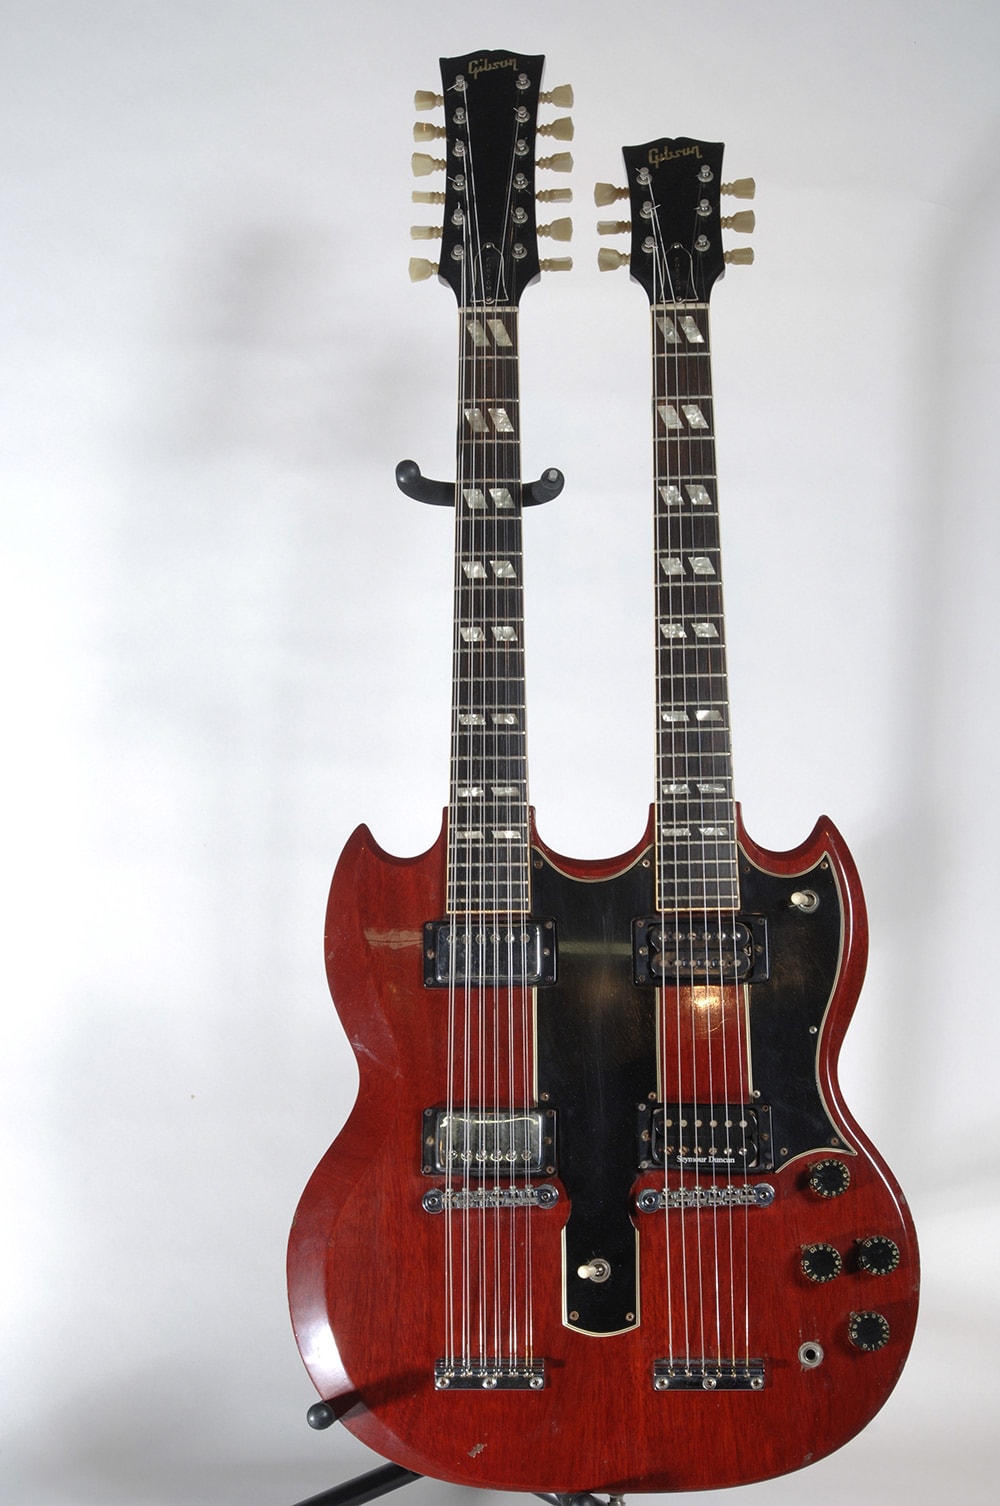 ギブソン社製ジミー・ペイジのためのエレクトリックとアコースティックのダブルネック・カスタム・ギター。「天国への階段」で使用。©The Metropolitan Museum of Art